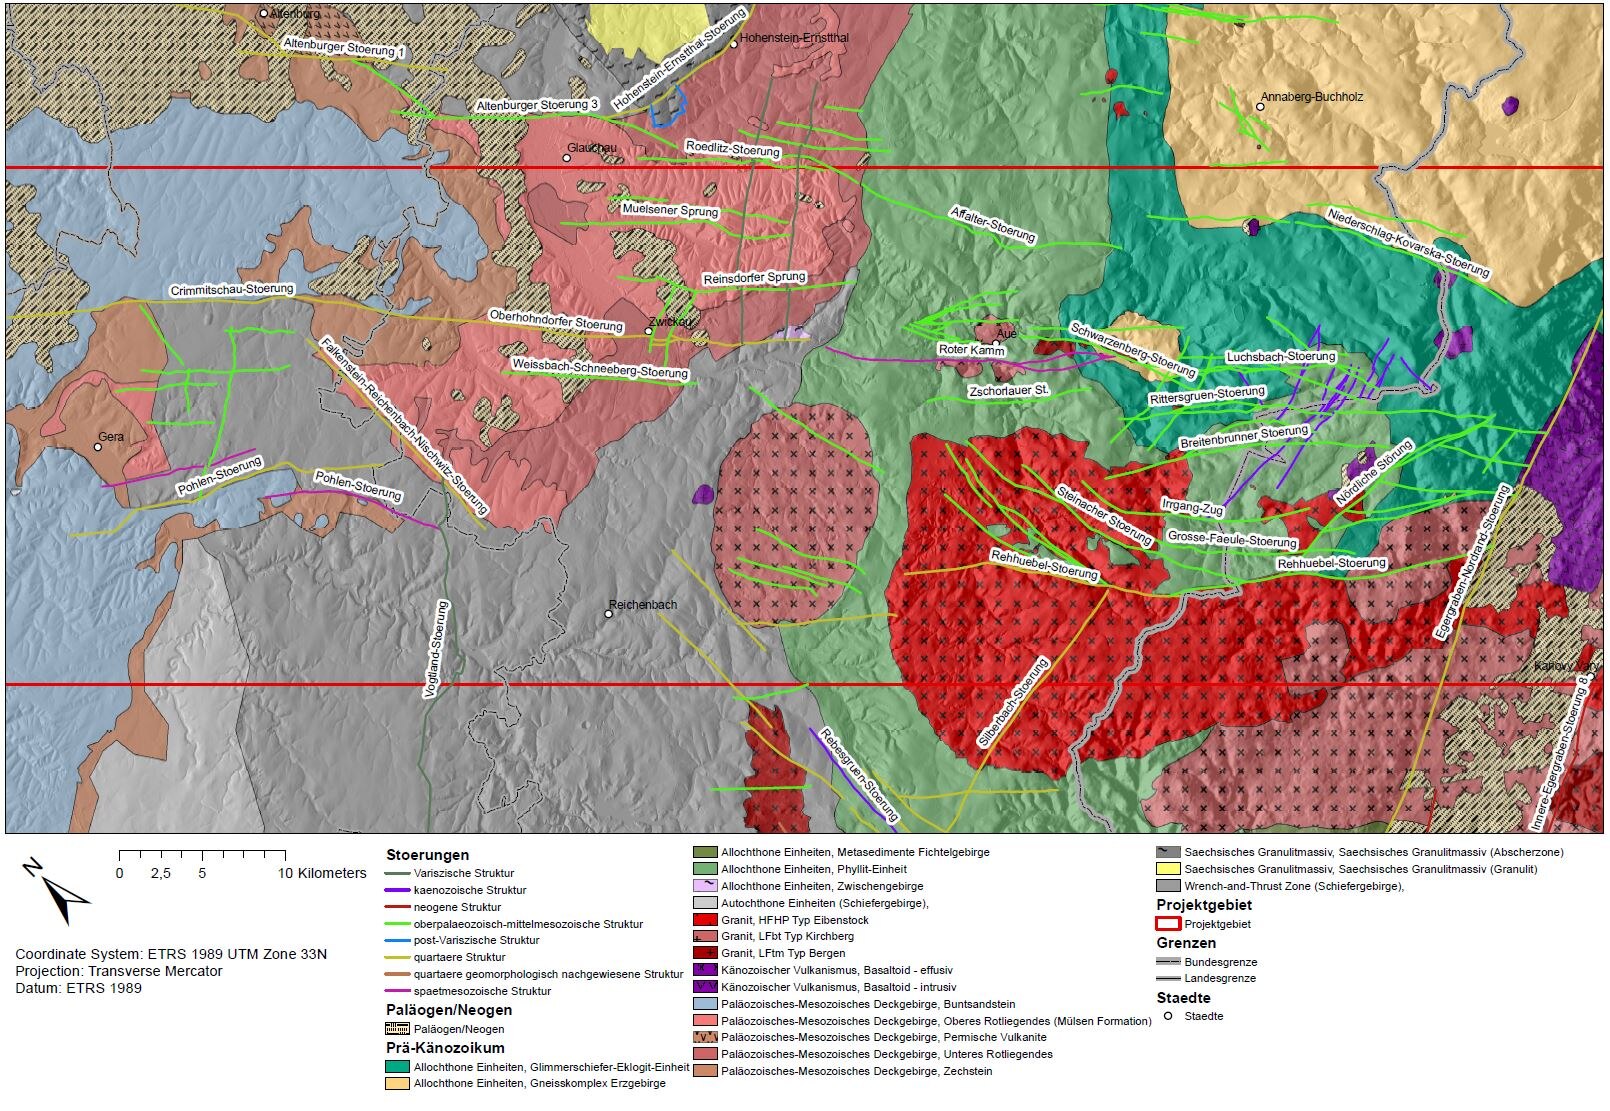 Geologische Karte der Gera-Jachymov-Zone mit geologischen Einheiten und wichtigen Störungen.